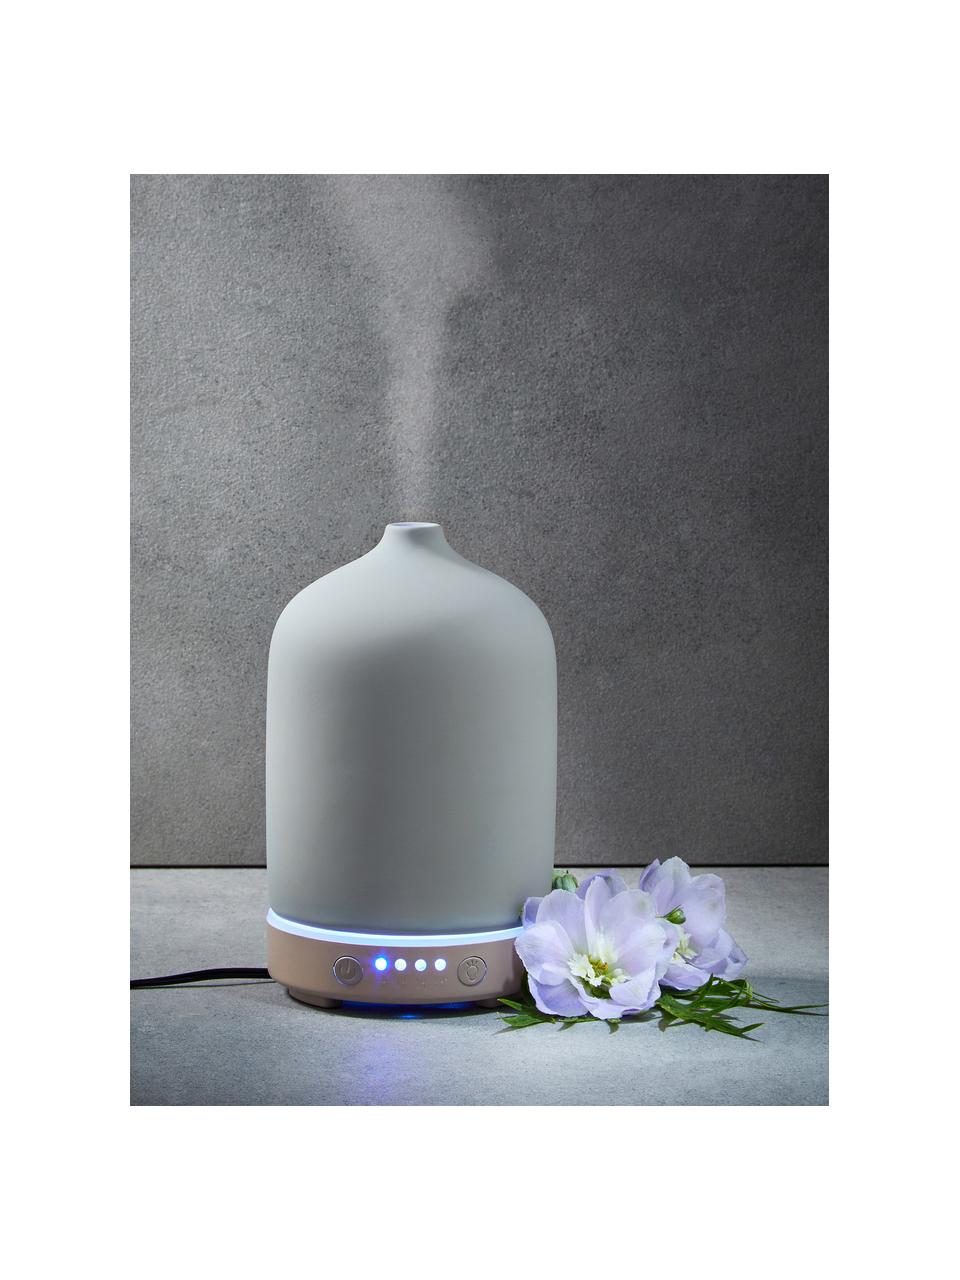 Dyfuzor elektryczny LED Cloud Nine, Ceramika, tworzywo sztuczne, metal, Szary, beżowy, Ø 9 x W 16 cm